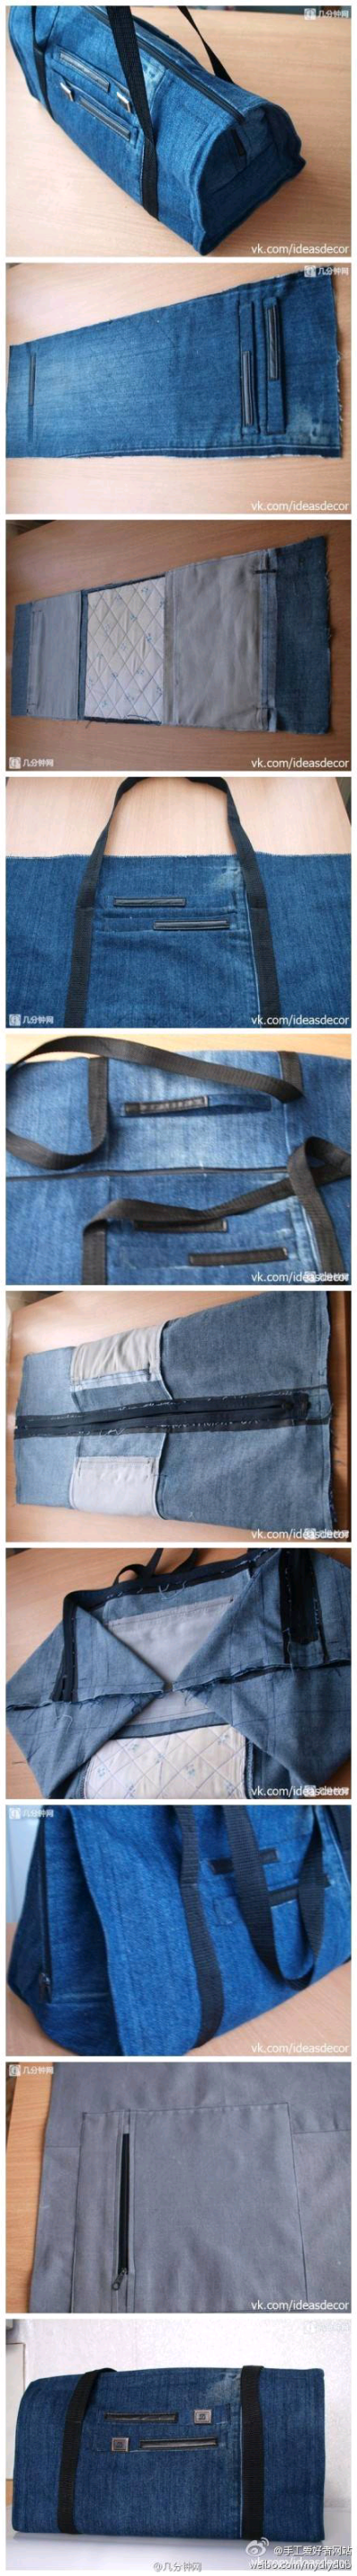 DIY把废旧牛仔裤改造成手提包